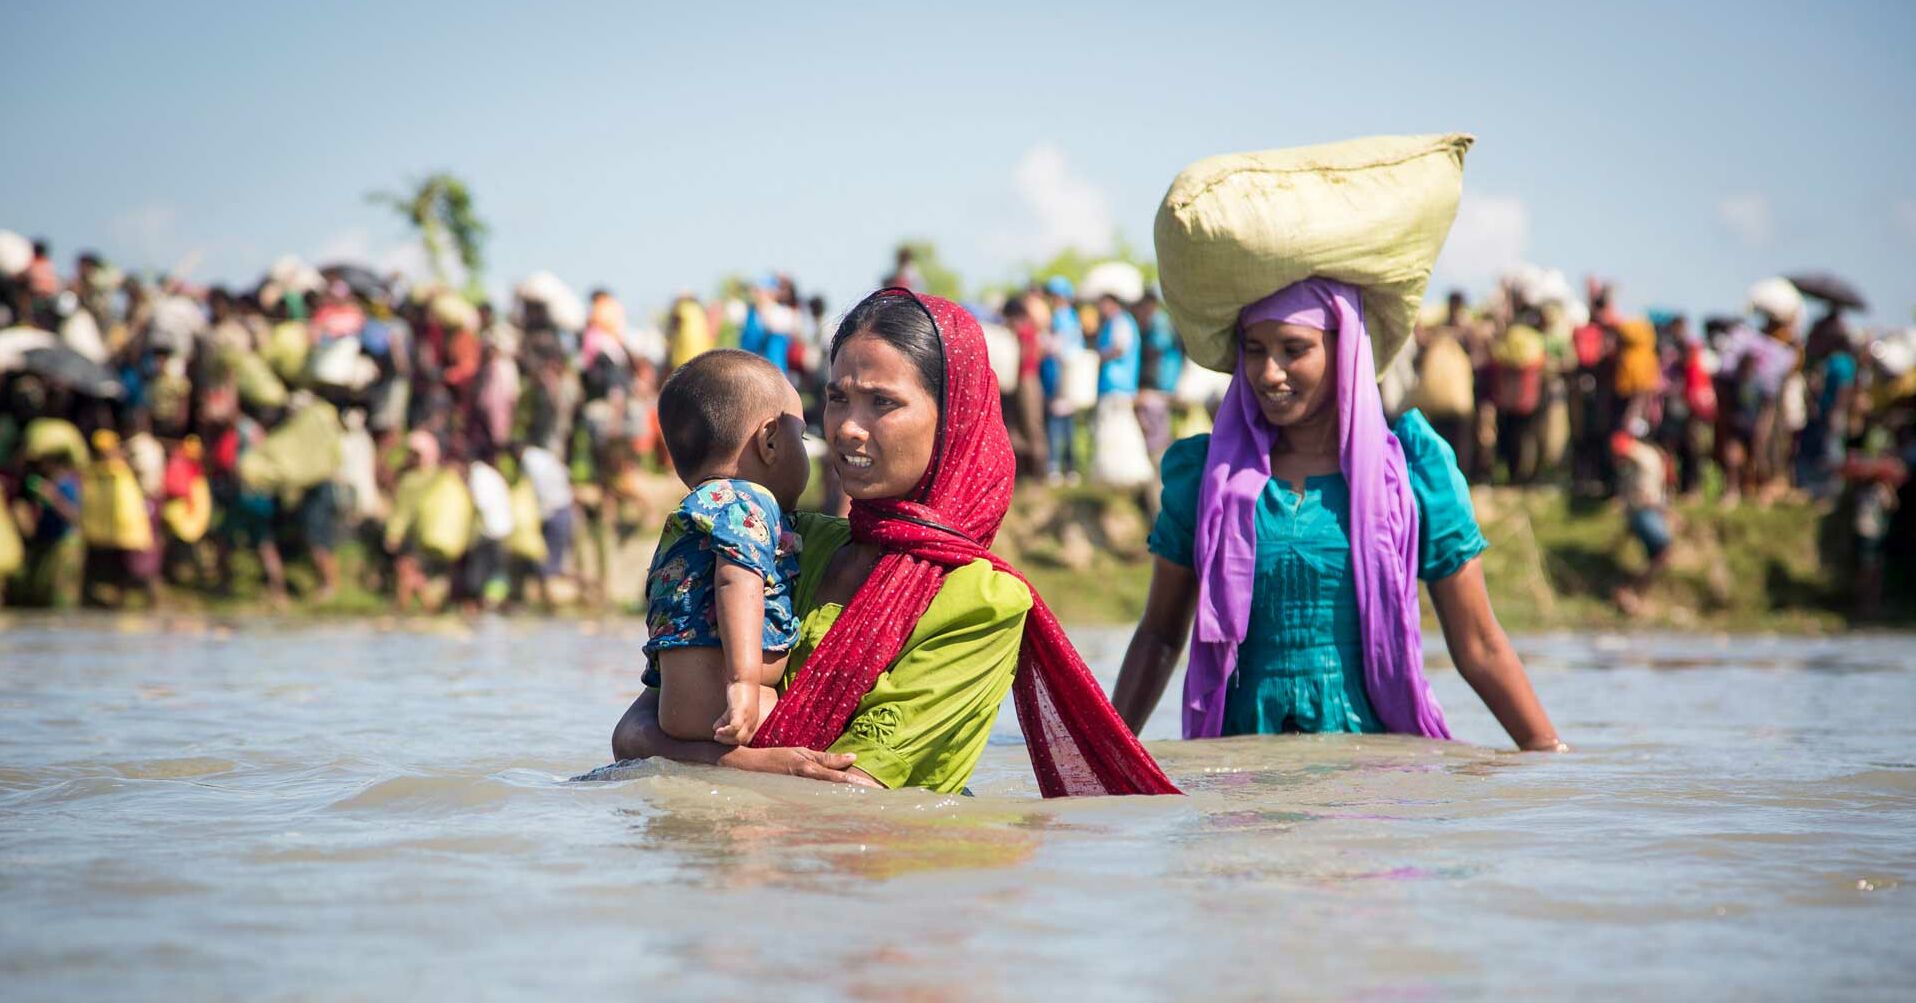 Rohingya Fraune in Fluss mit Kind auf dem Arm, Hindergrund Gruppe RF2131184_1920x1080.jpg